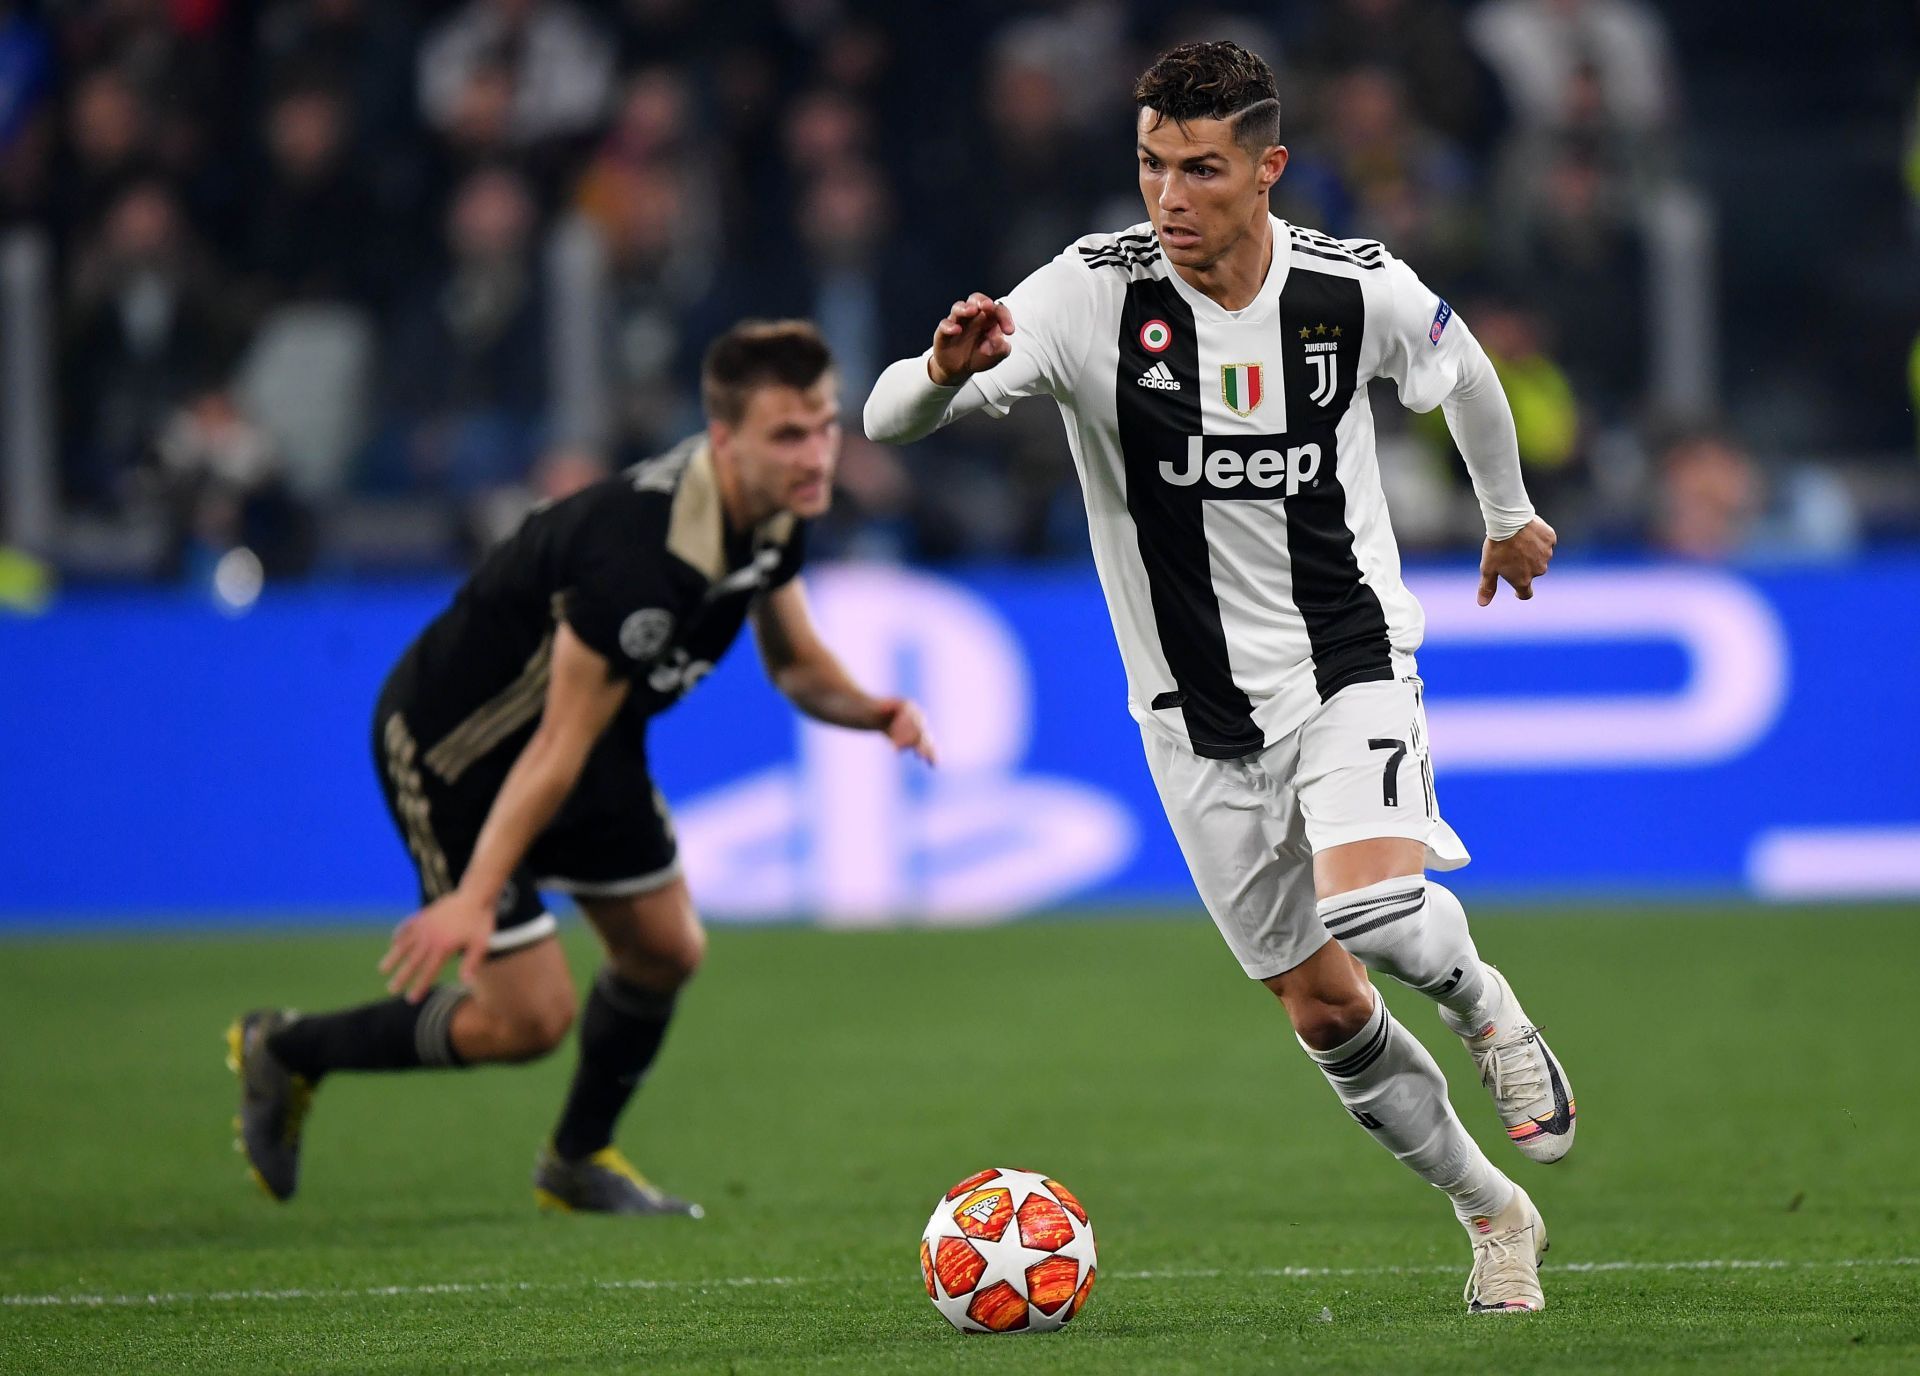 Ronaldo got his first European hat-trick against Ajax